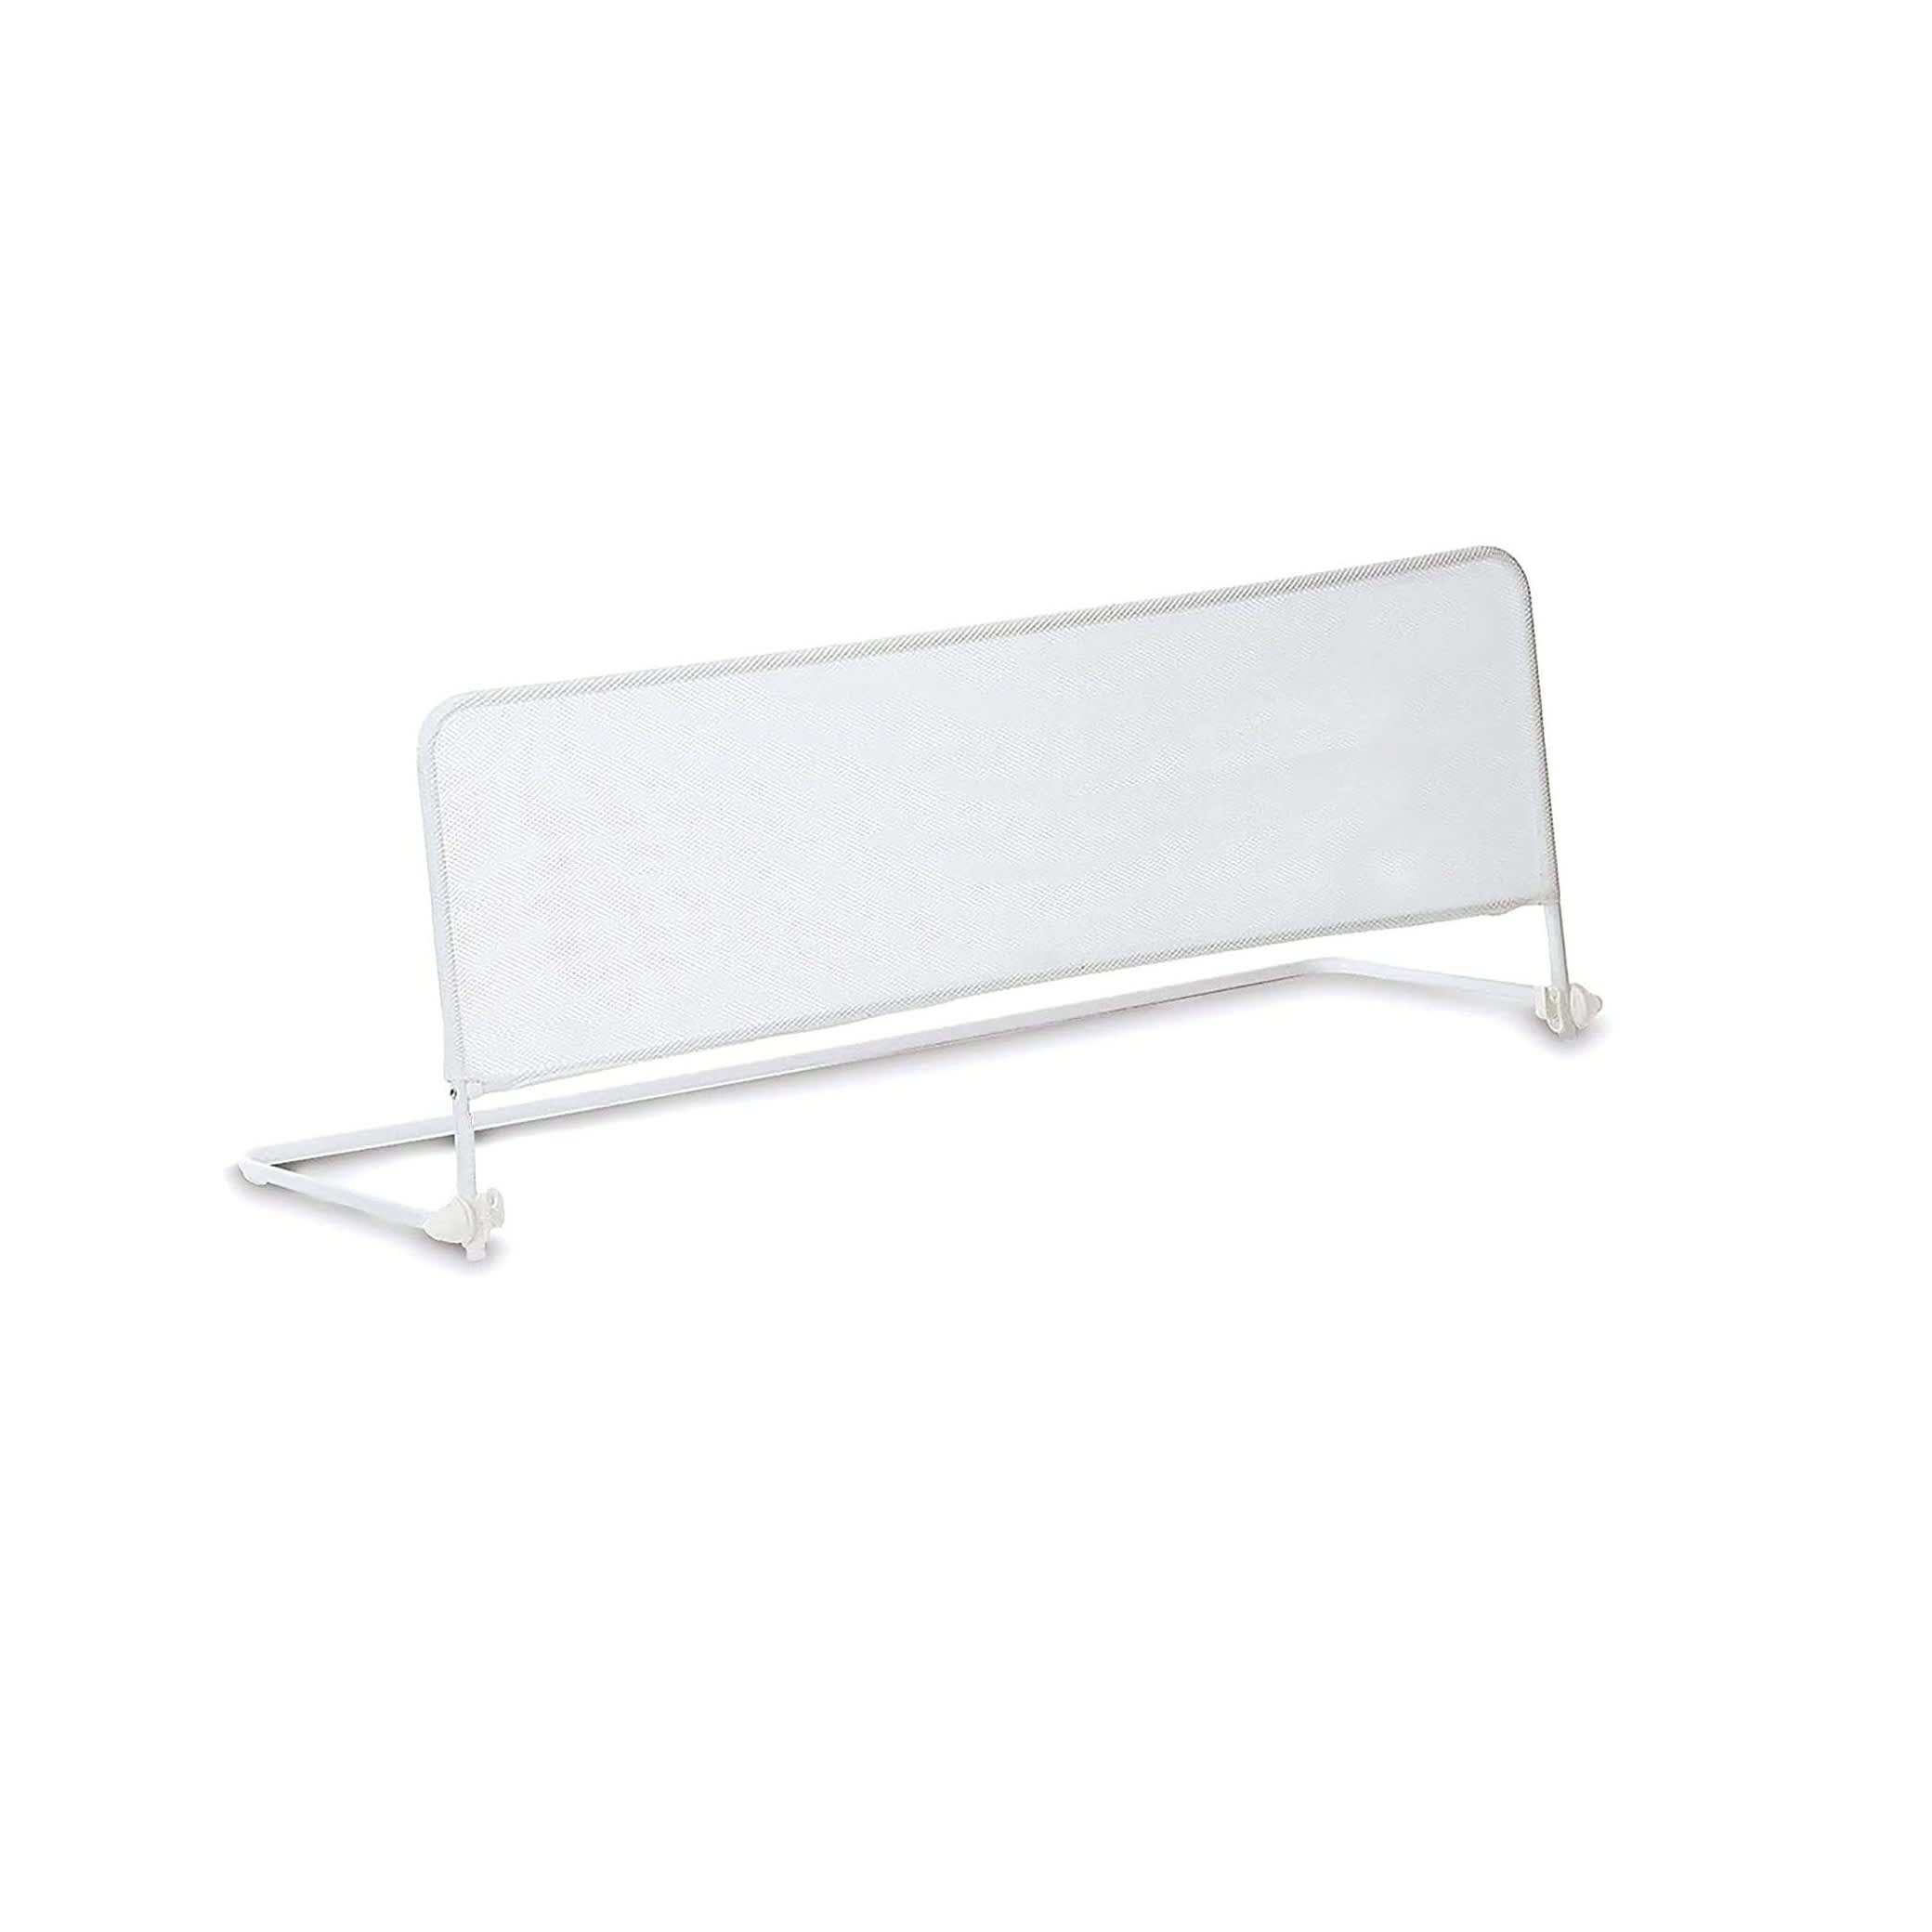 E-shop Babify Skladacia zábrana na posteľ, ochrana proti pádu, 120 cm x 50 cm, biela